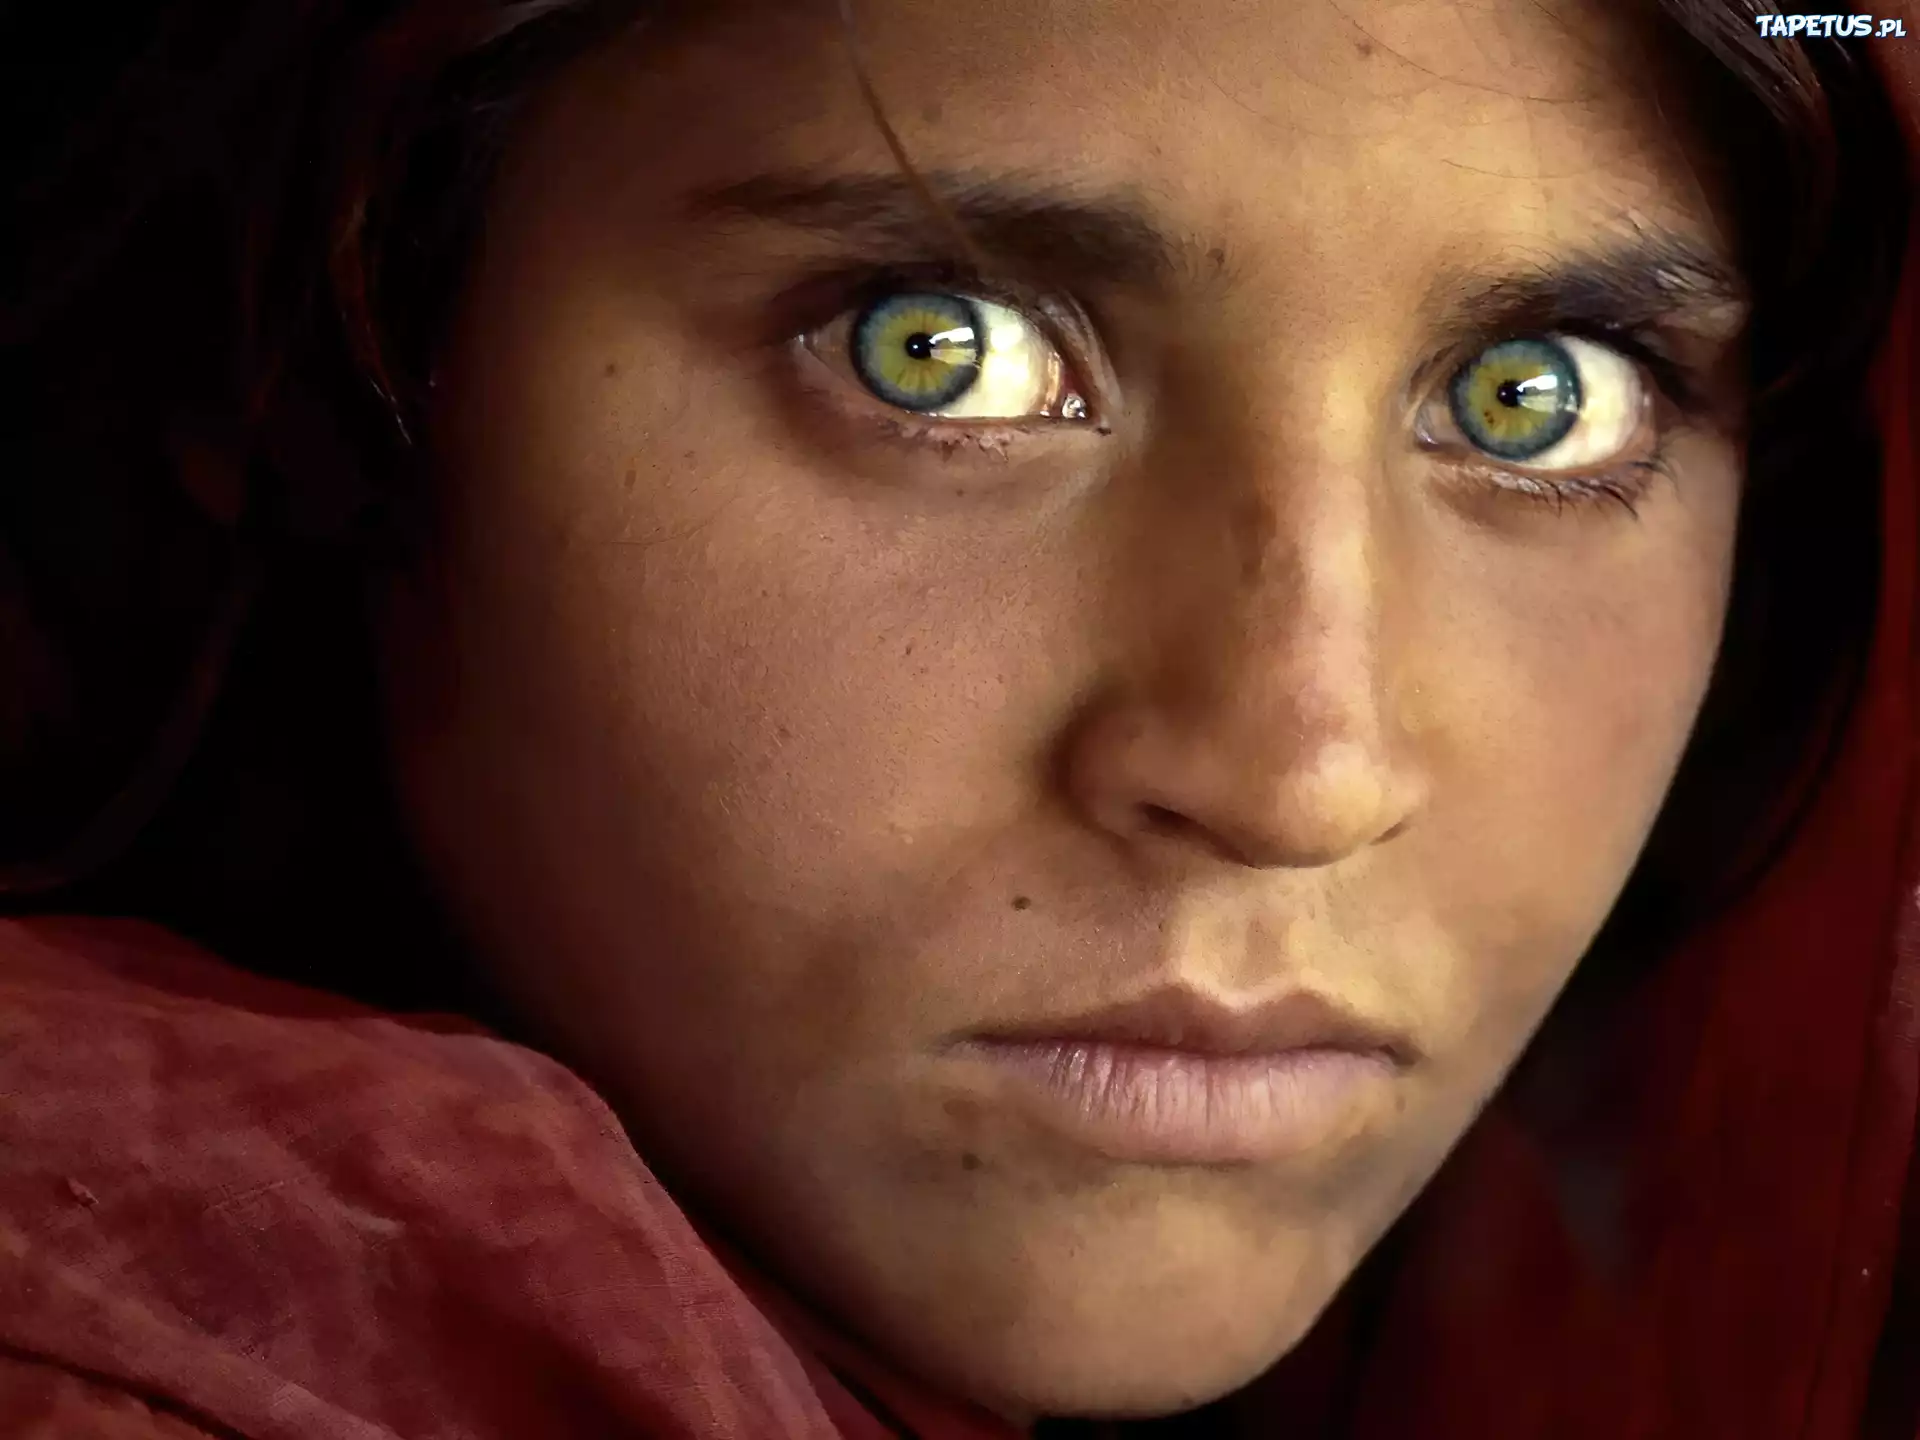 Глаза у федора выразительные взгляд прям суров. Шарбат Гула 2021. Стив МАККАРРИ Шарбат Гула. Шарбат Гула National Geographic. Стив МАККАРРИ Афганская девочка.